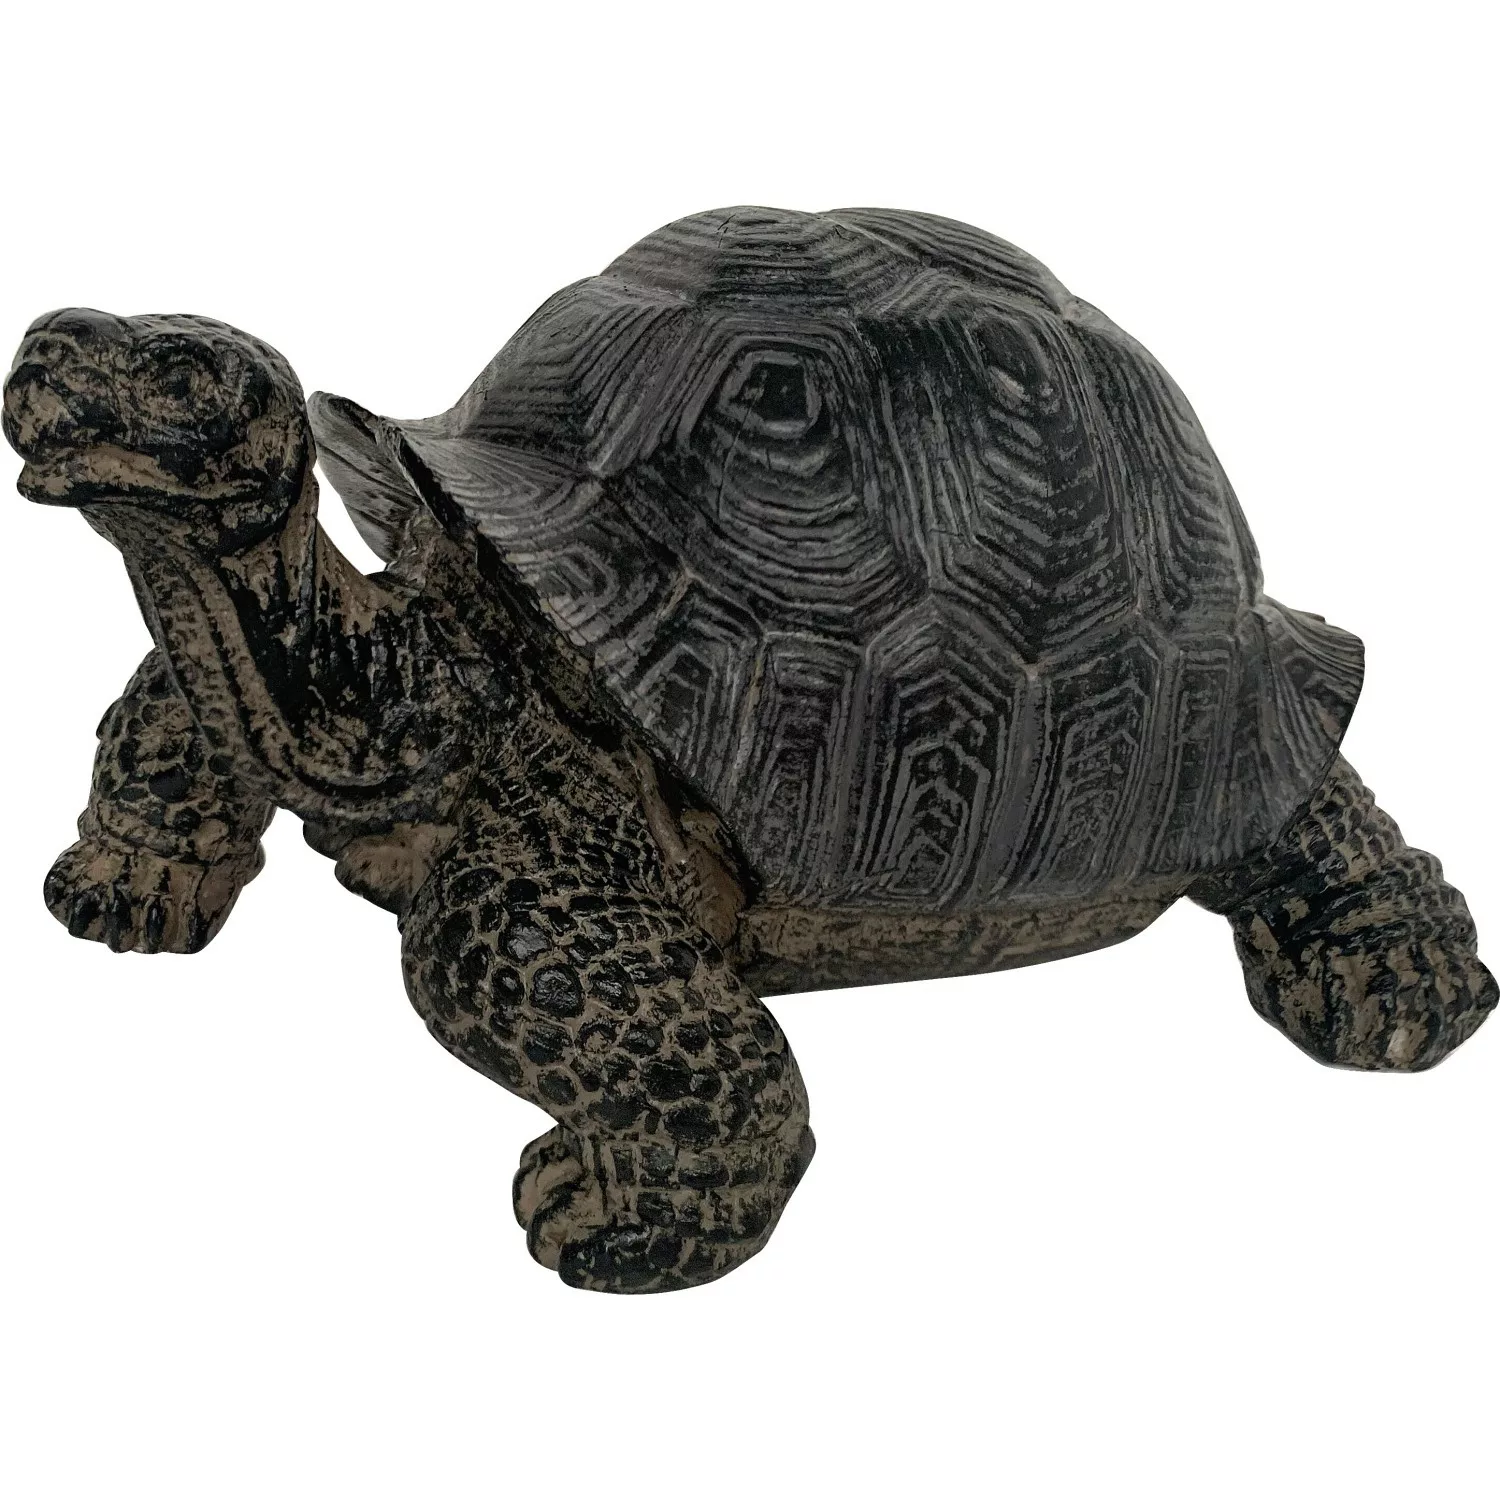 Gartenfigur Schildkröte 9 cm Dunkelgrau günstig online kaufen